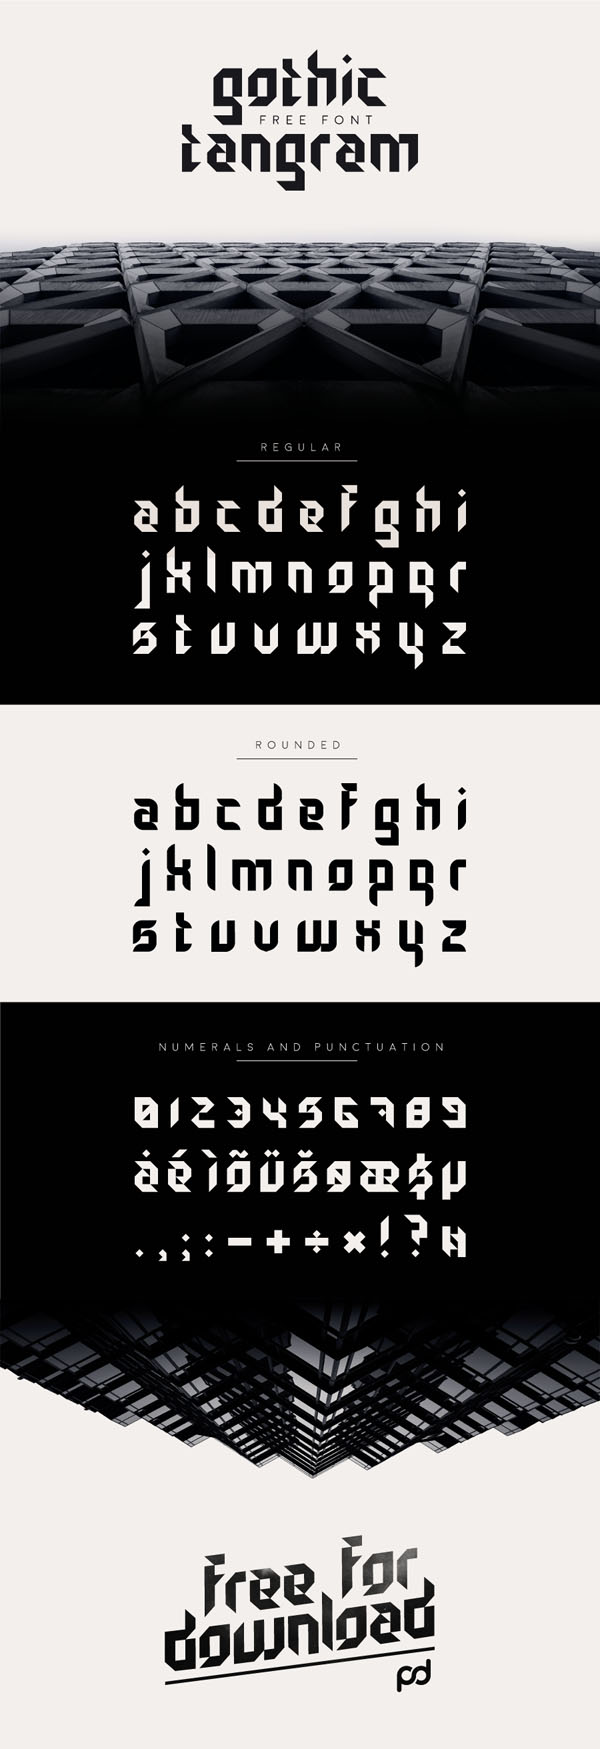 Gothic Tangram Free Typeface - Smashfreakz